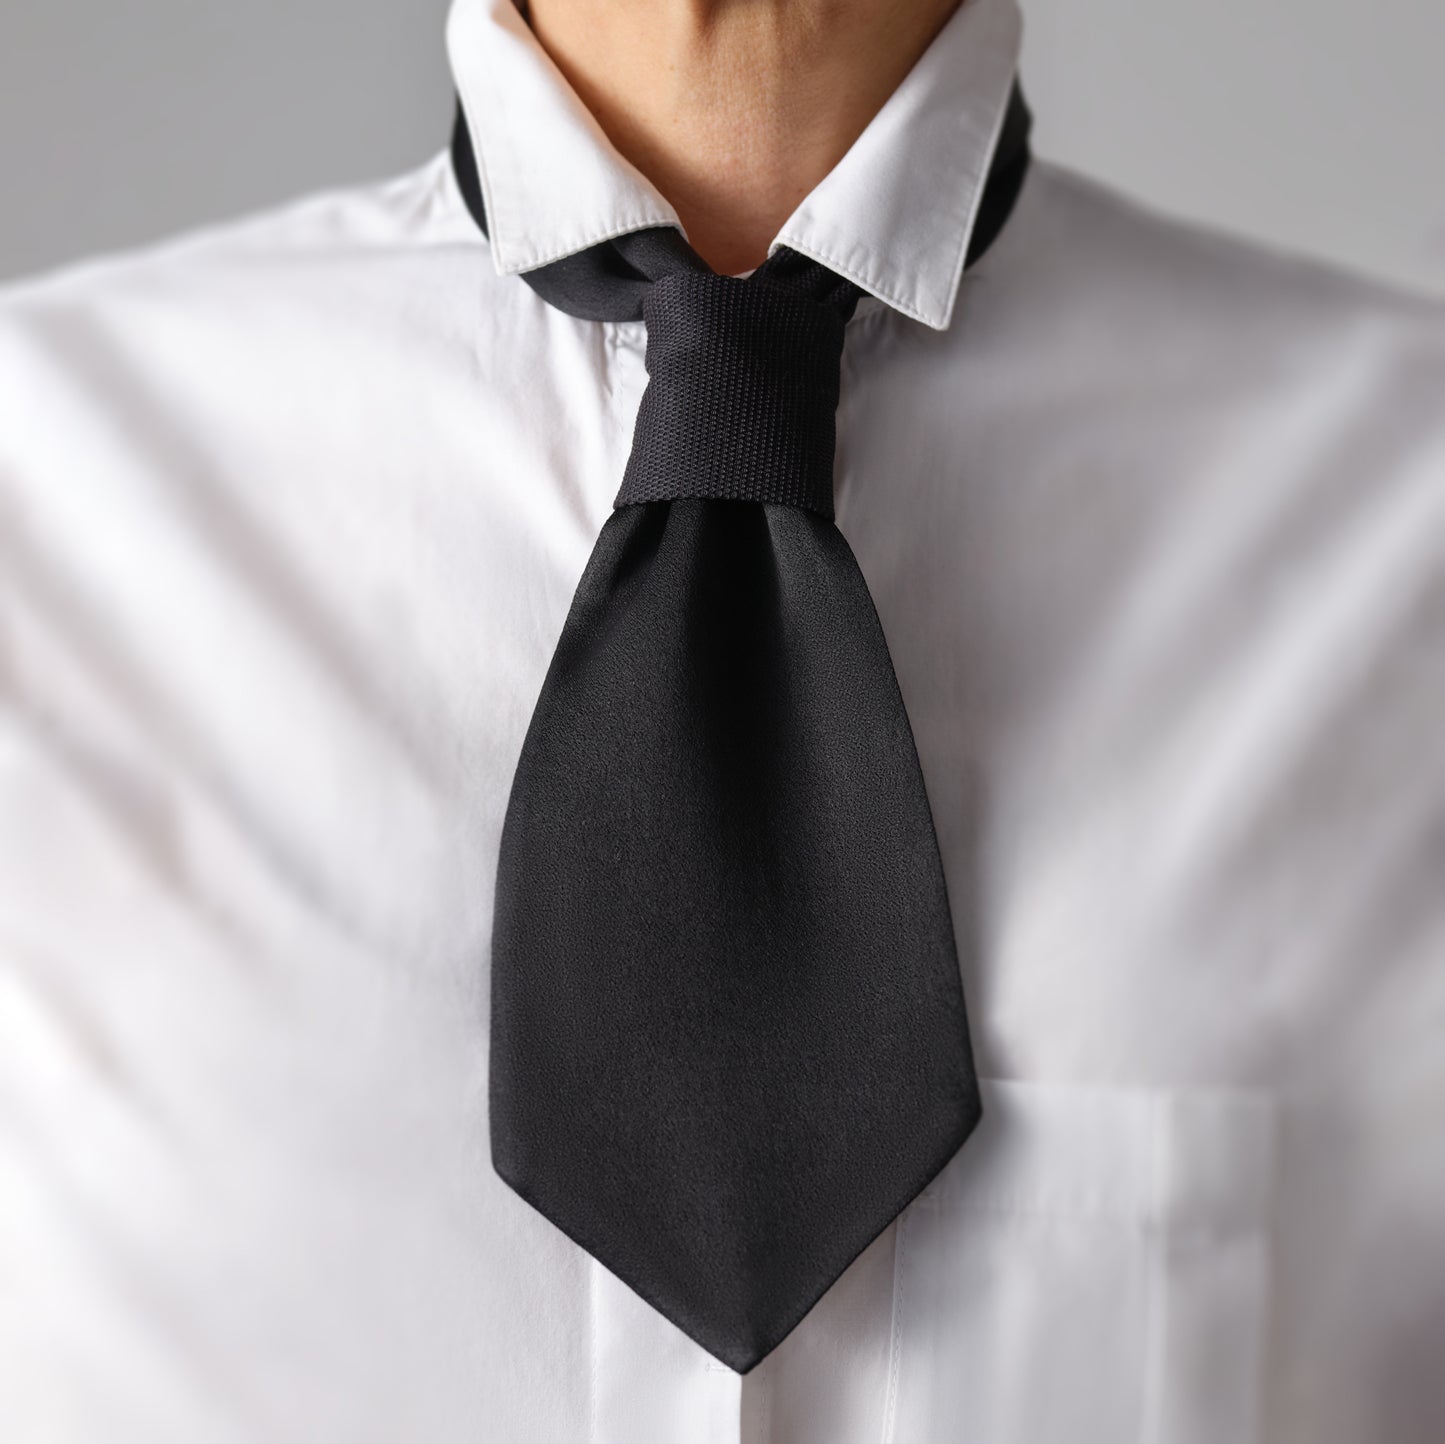 Femme portant une cravate courte noire sur une chemise. Chic, discret et décontracté